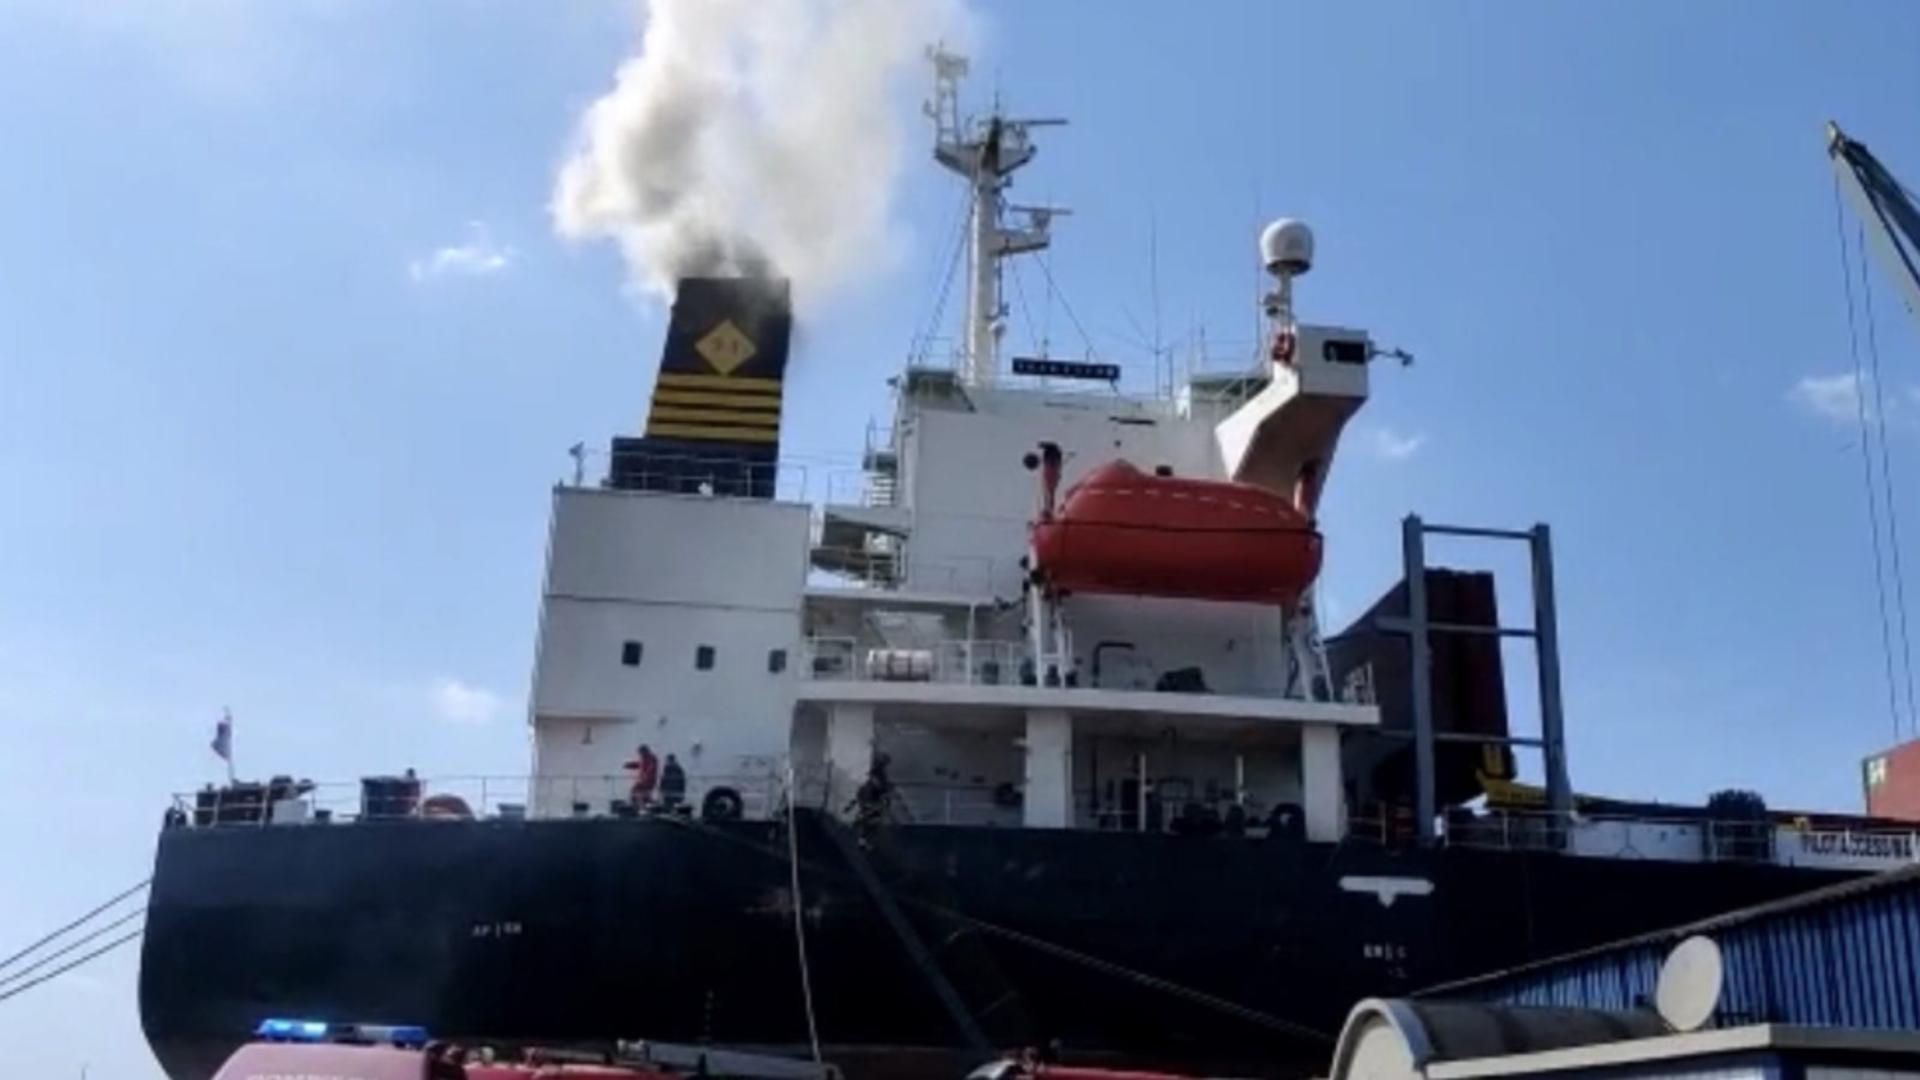 Incendiu produs la o navă aflată la reparat